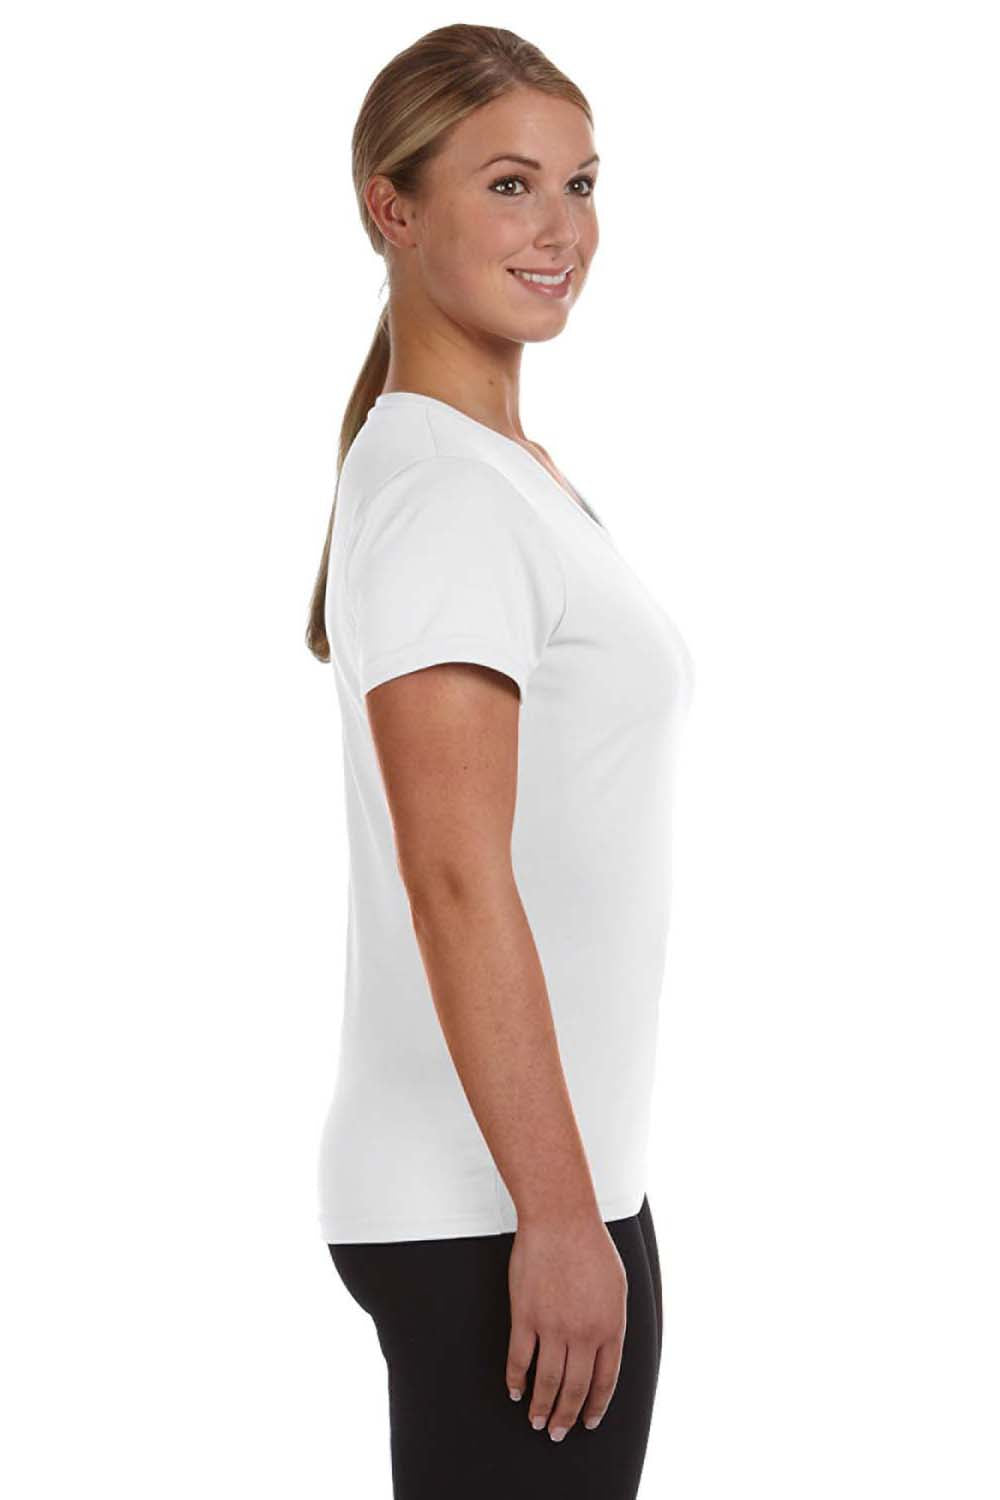 Augusta Sportswear 1790 Womens Moisture Wicking Short Sleeve V-Neck T-Shirt White Model Side